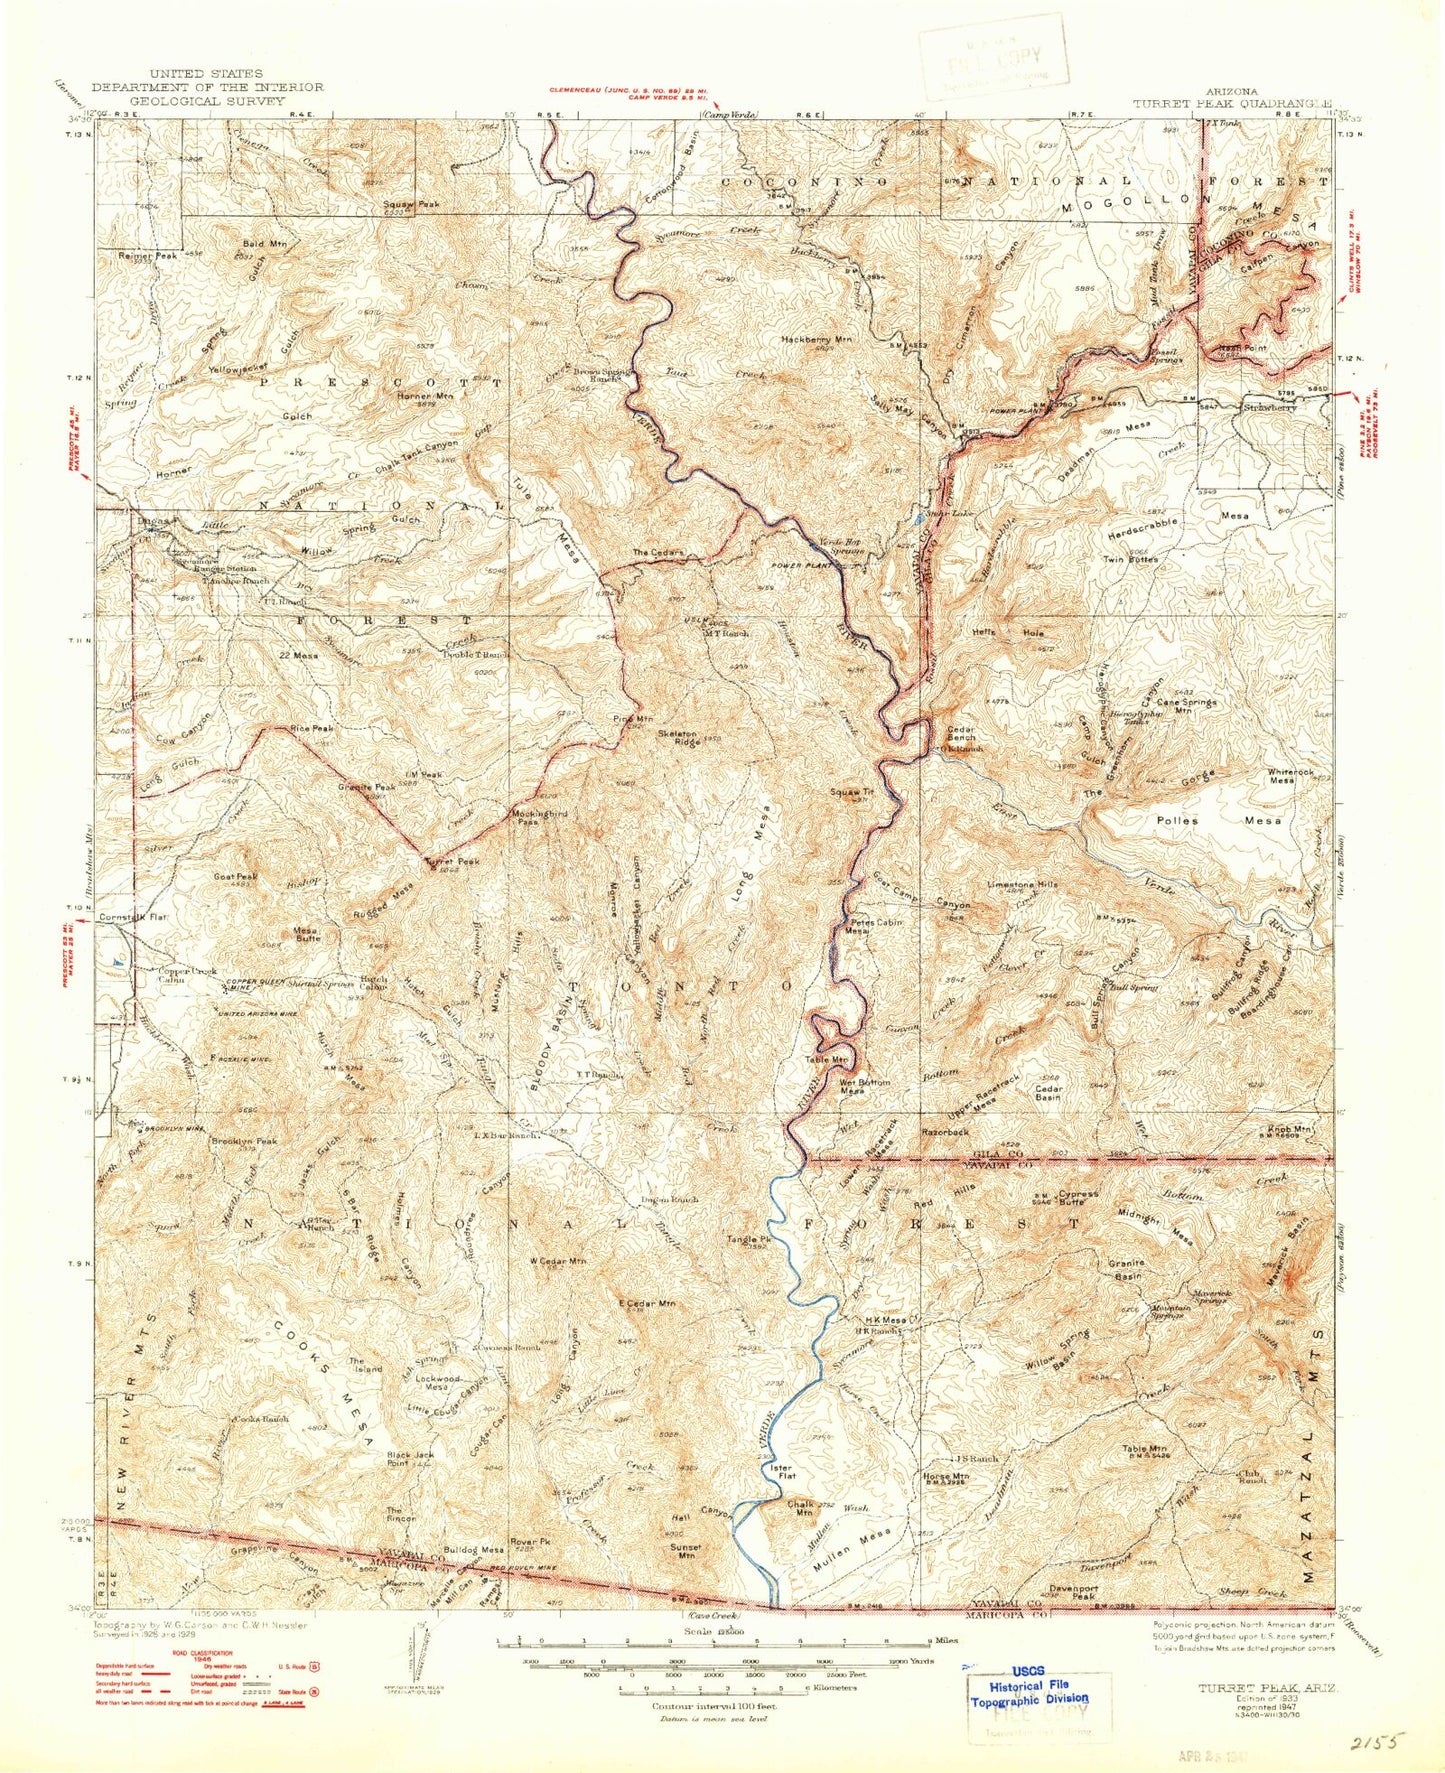 Historic 1933 Turret Peak Arizona 30'x30' Topo Map Image